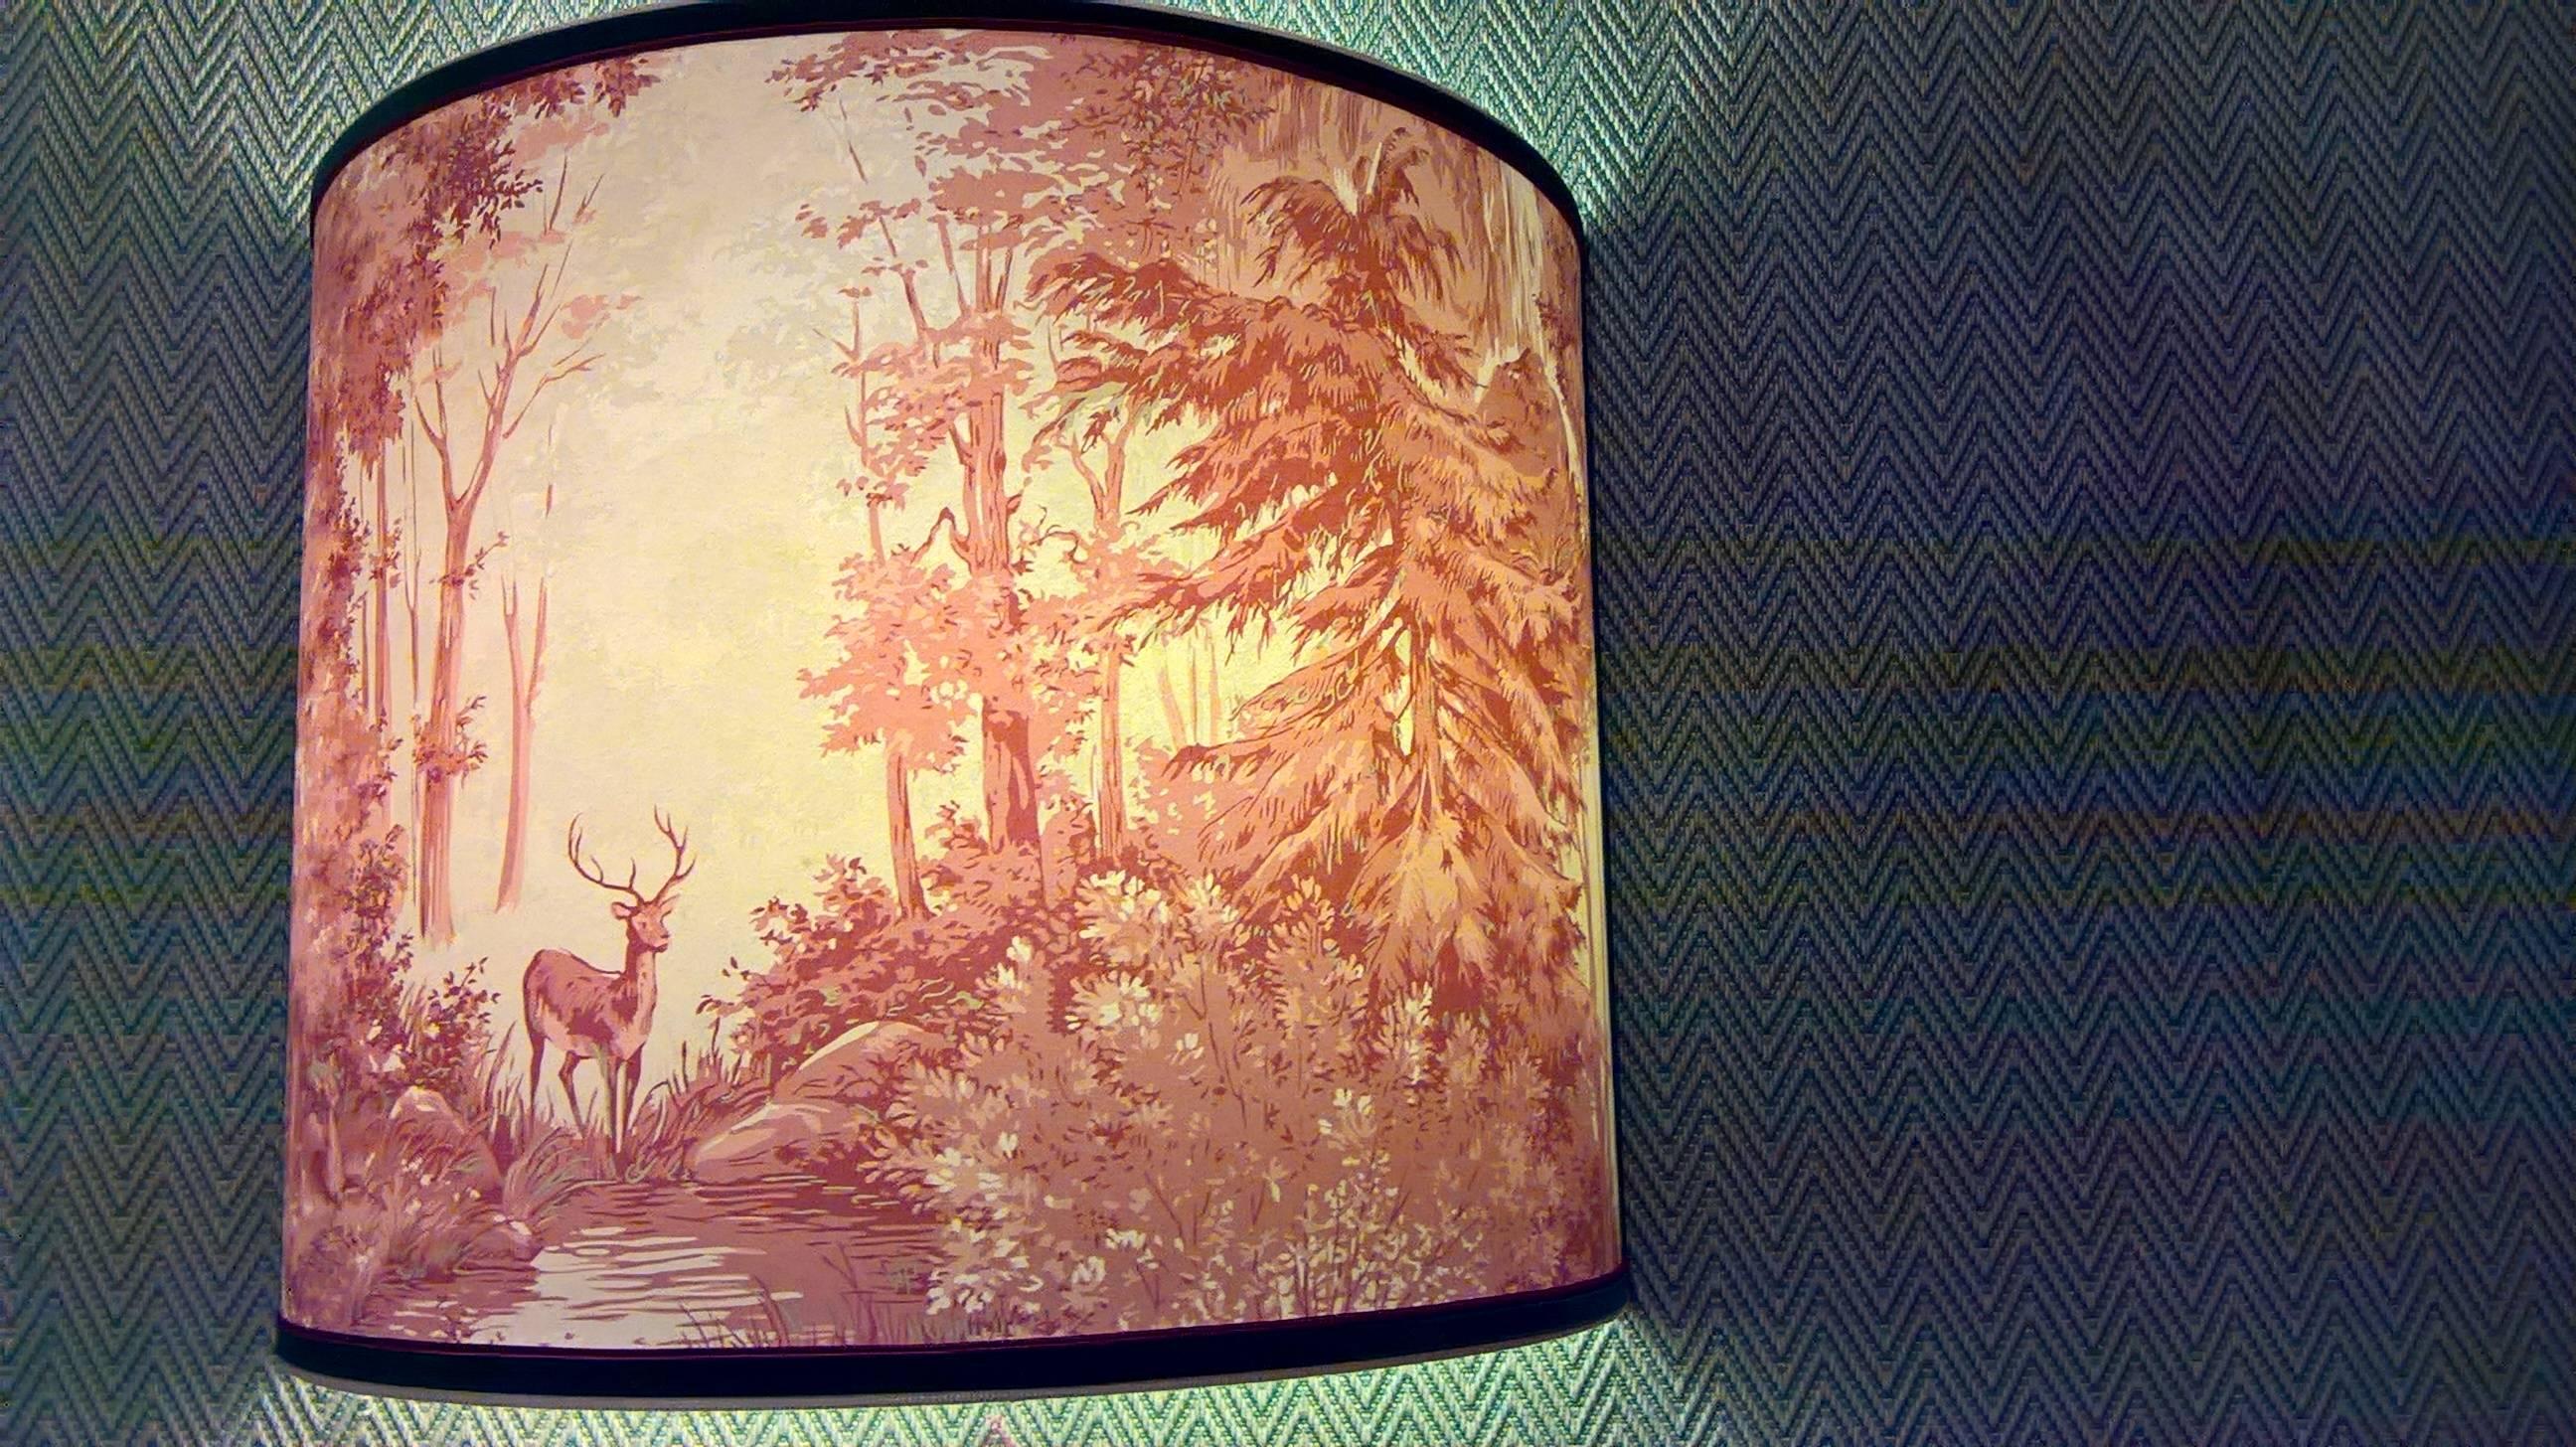 Grand abat-jour fait main en papier peint avec une scène de chasse en rouge et beige dans le style de la forêt noire. Fabriqué à la main en Autriche. 
Corrigé avec le paspol vert et rouge. Deux cornières en fer fabriquées à la main pour